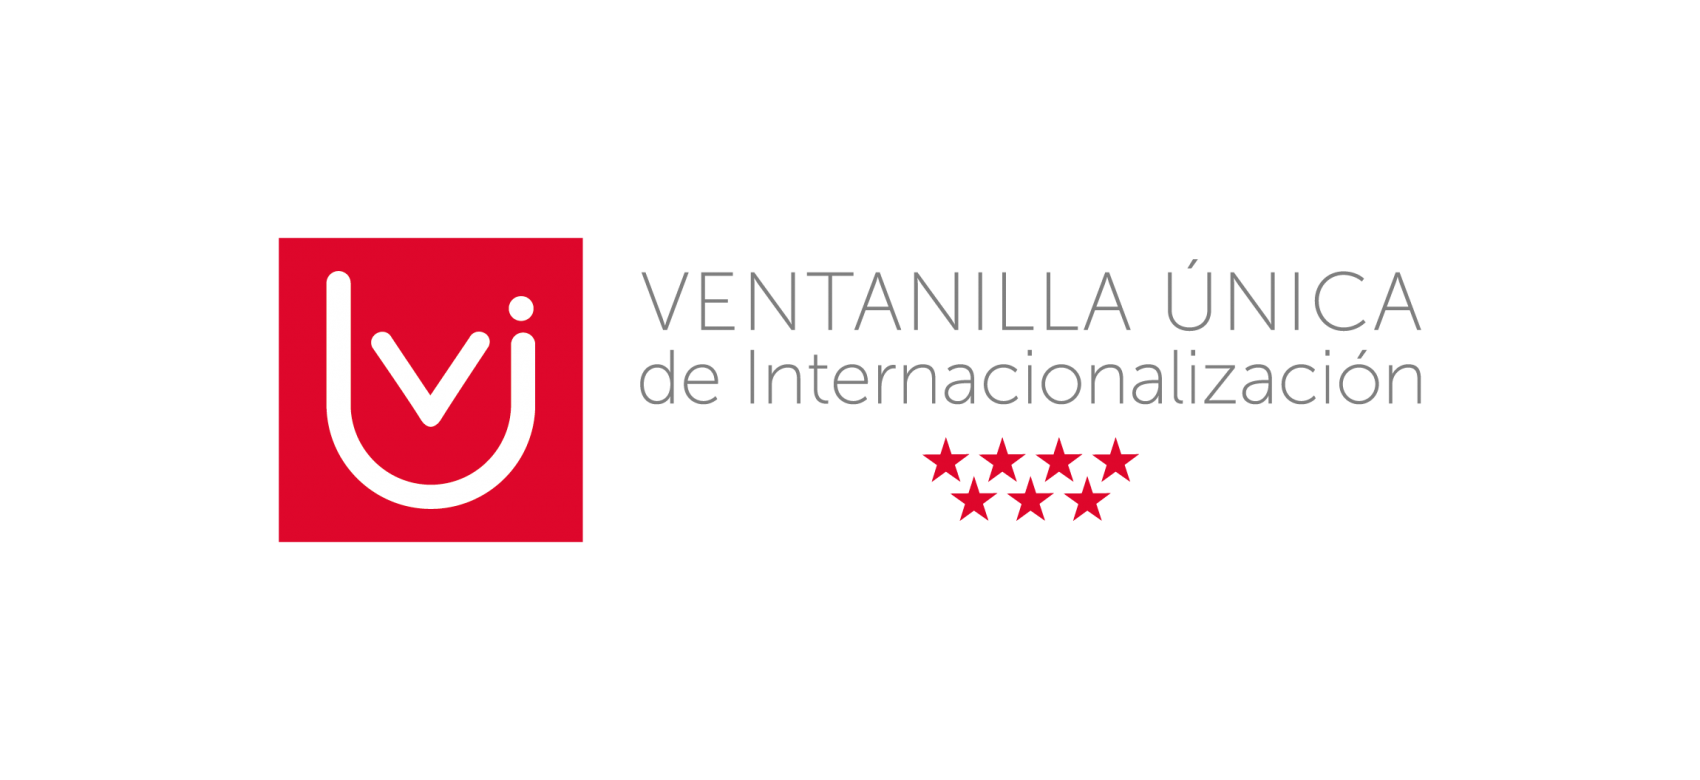 Logotipo con las letras vui